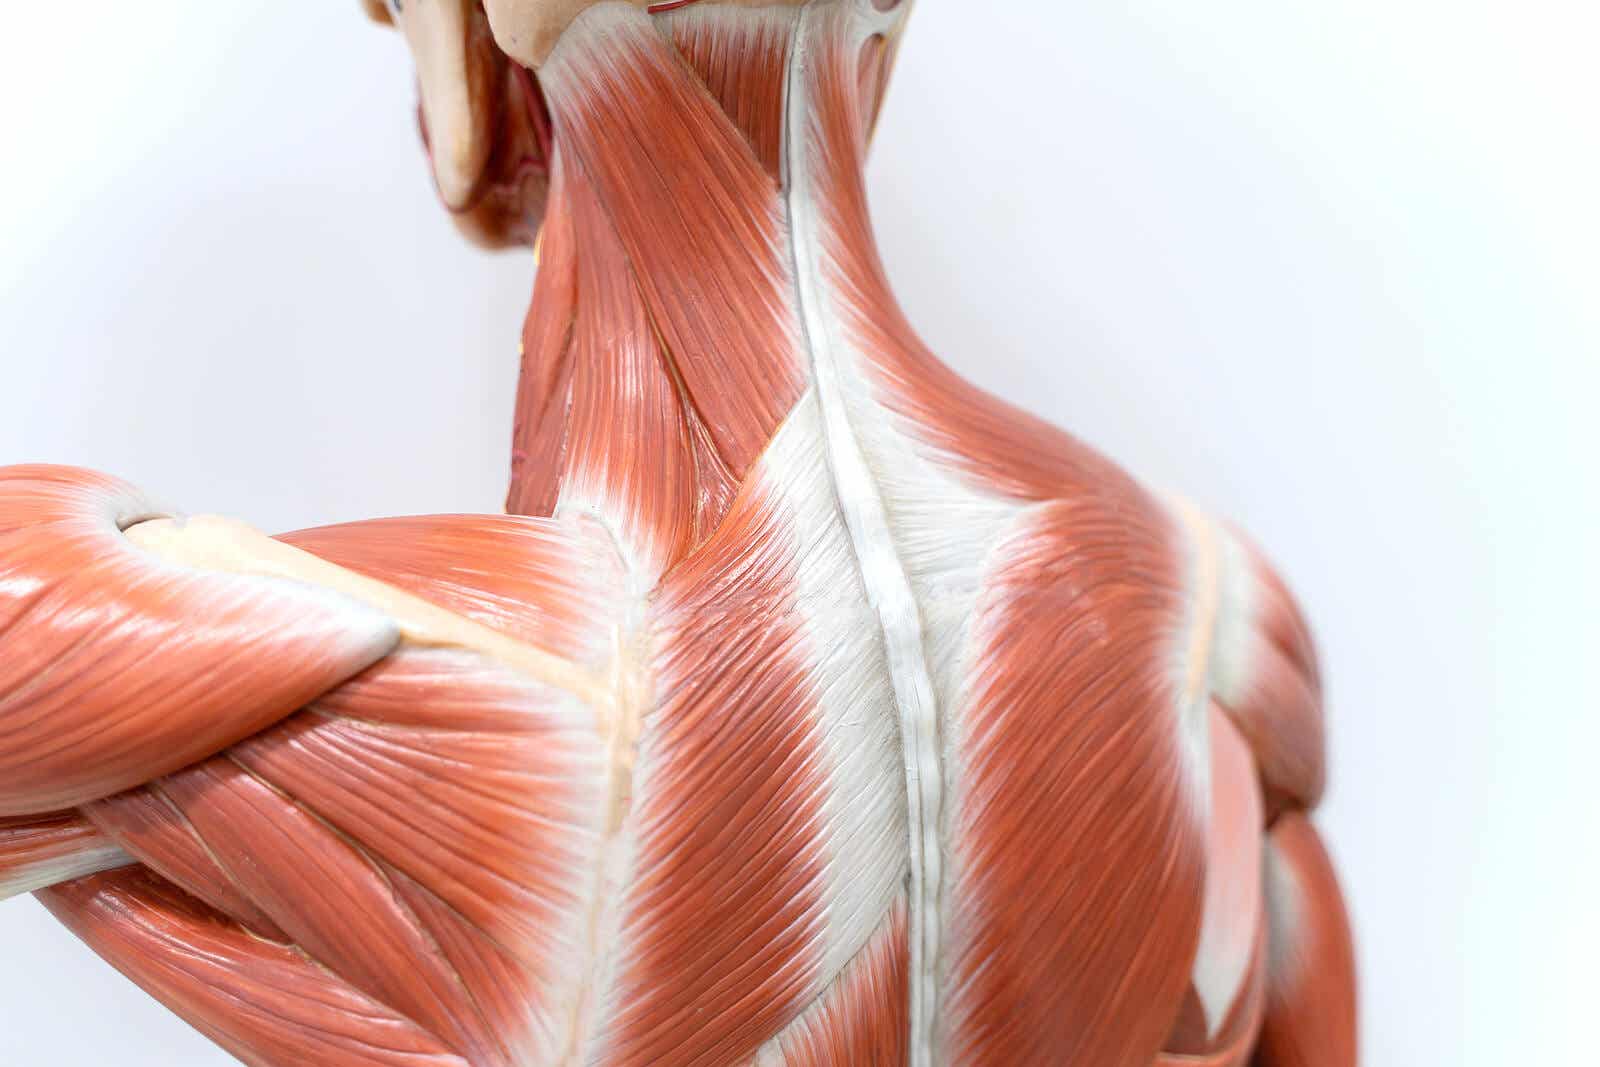 Myofasziale Entspannung - Schaubild Rückenmuskulatur